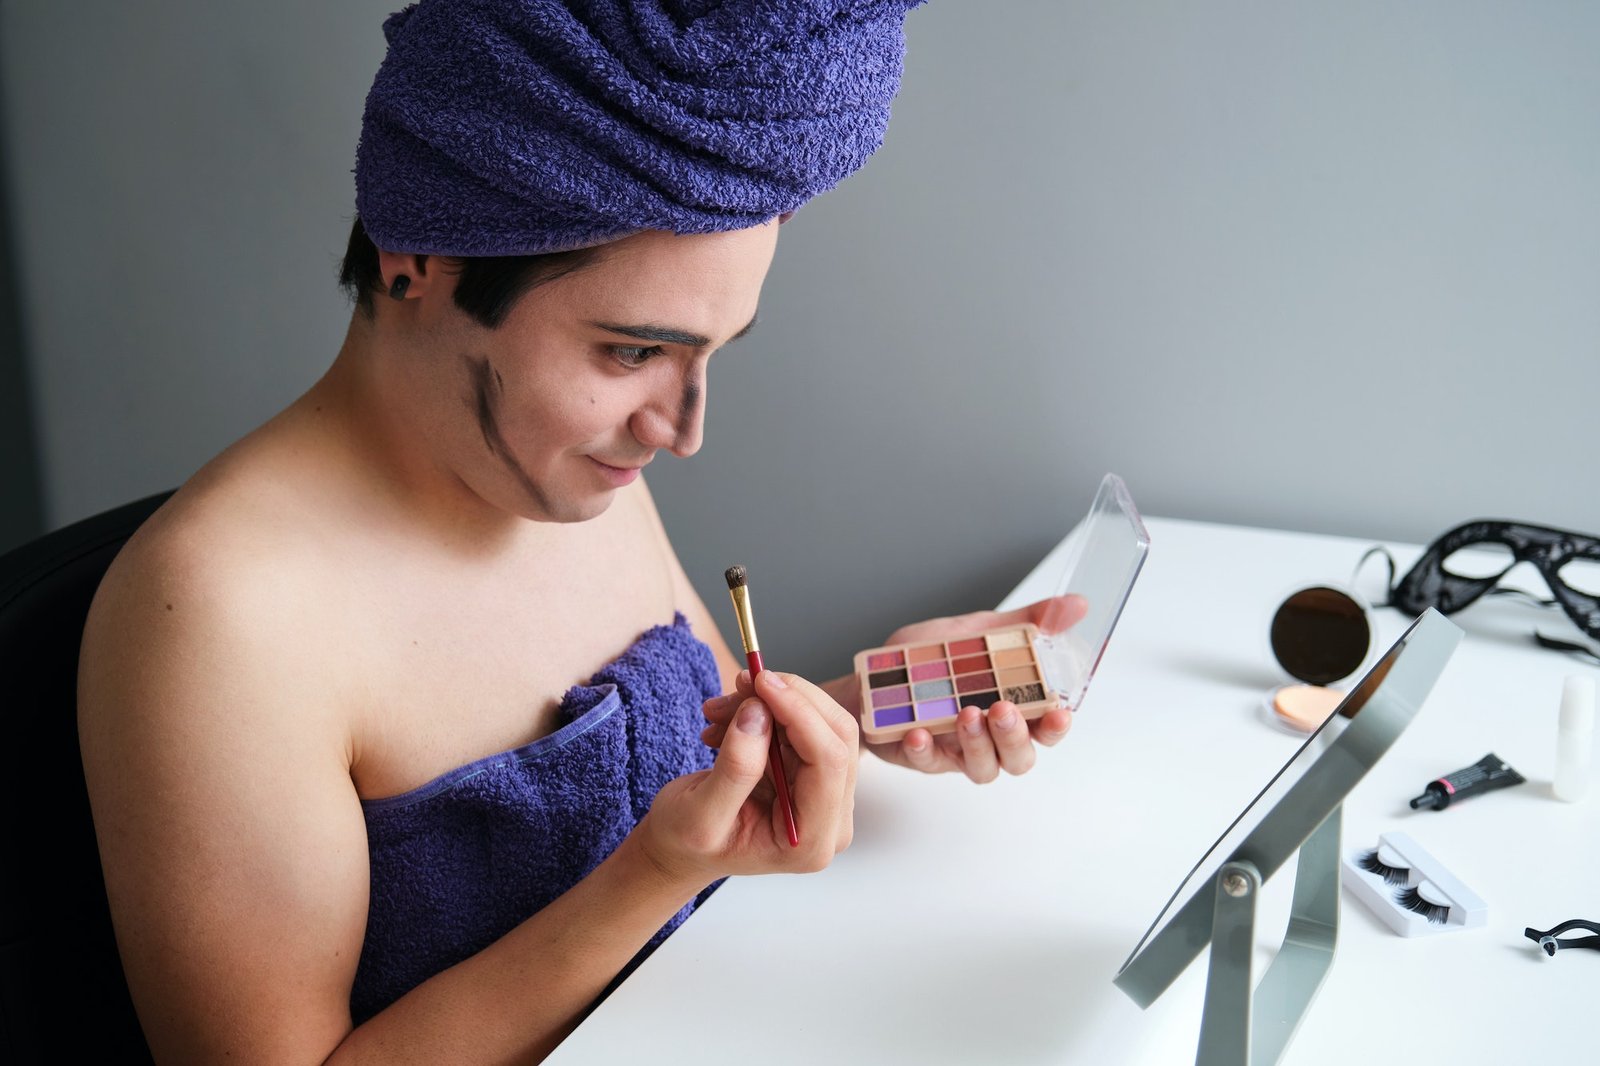 Ung transkjønnet mann konturerer ansiktet sitt etter dusjen.